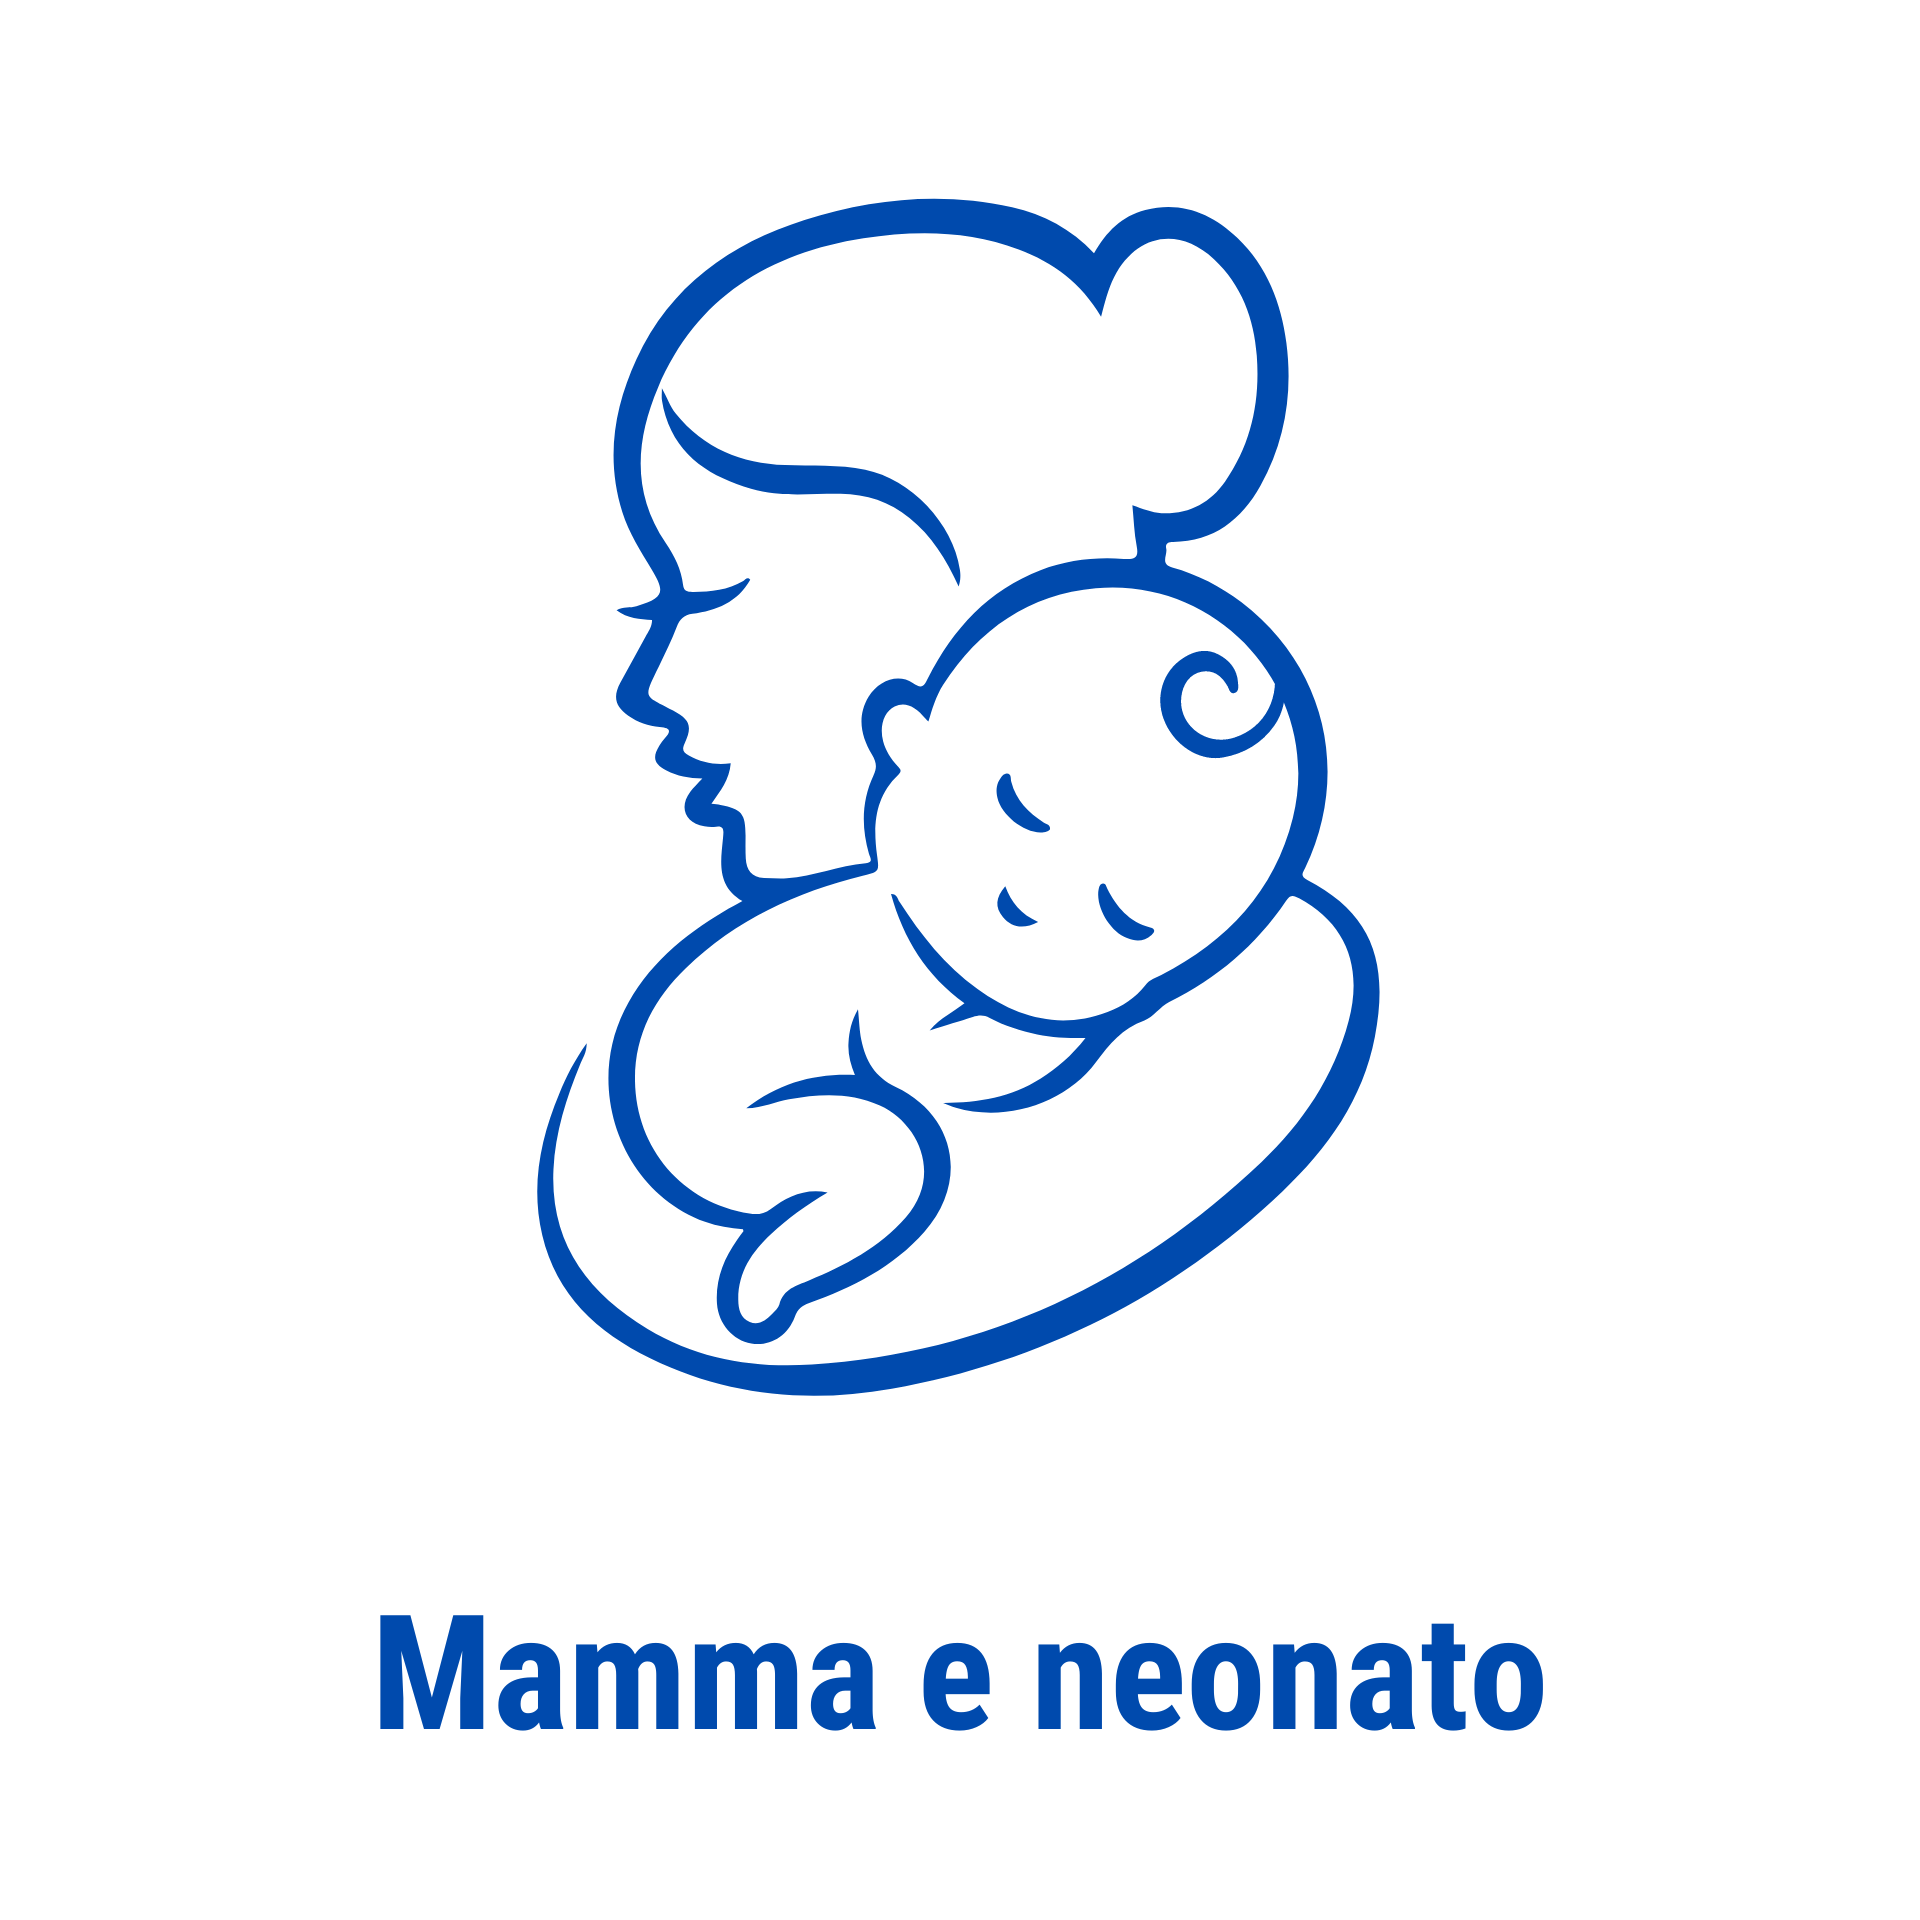 mamma e neonato